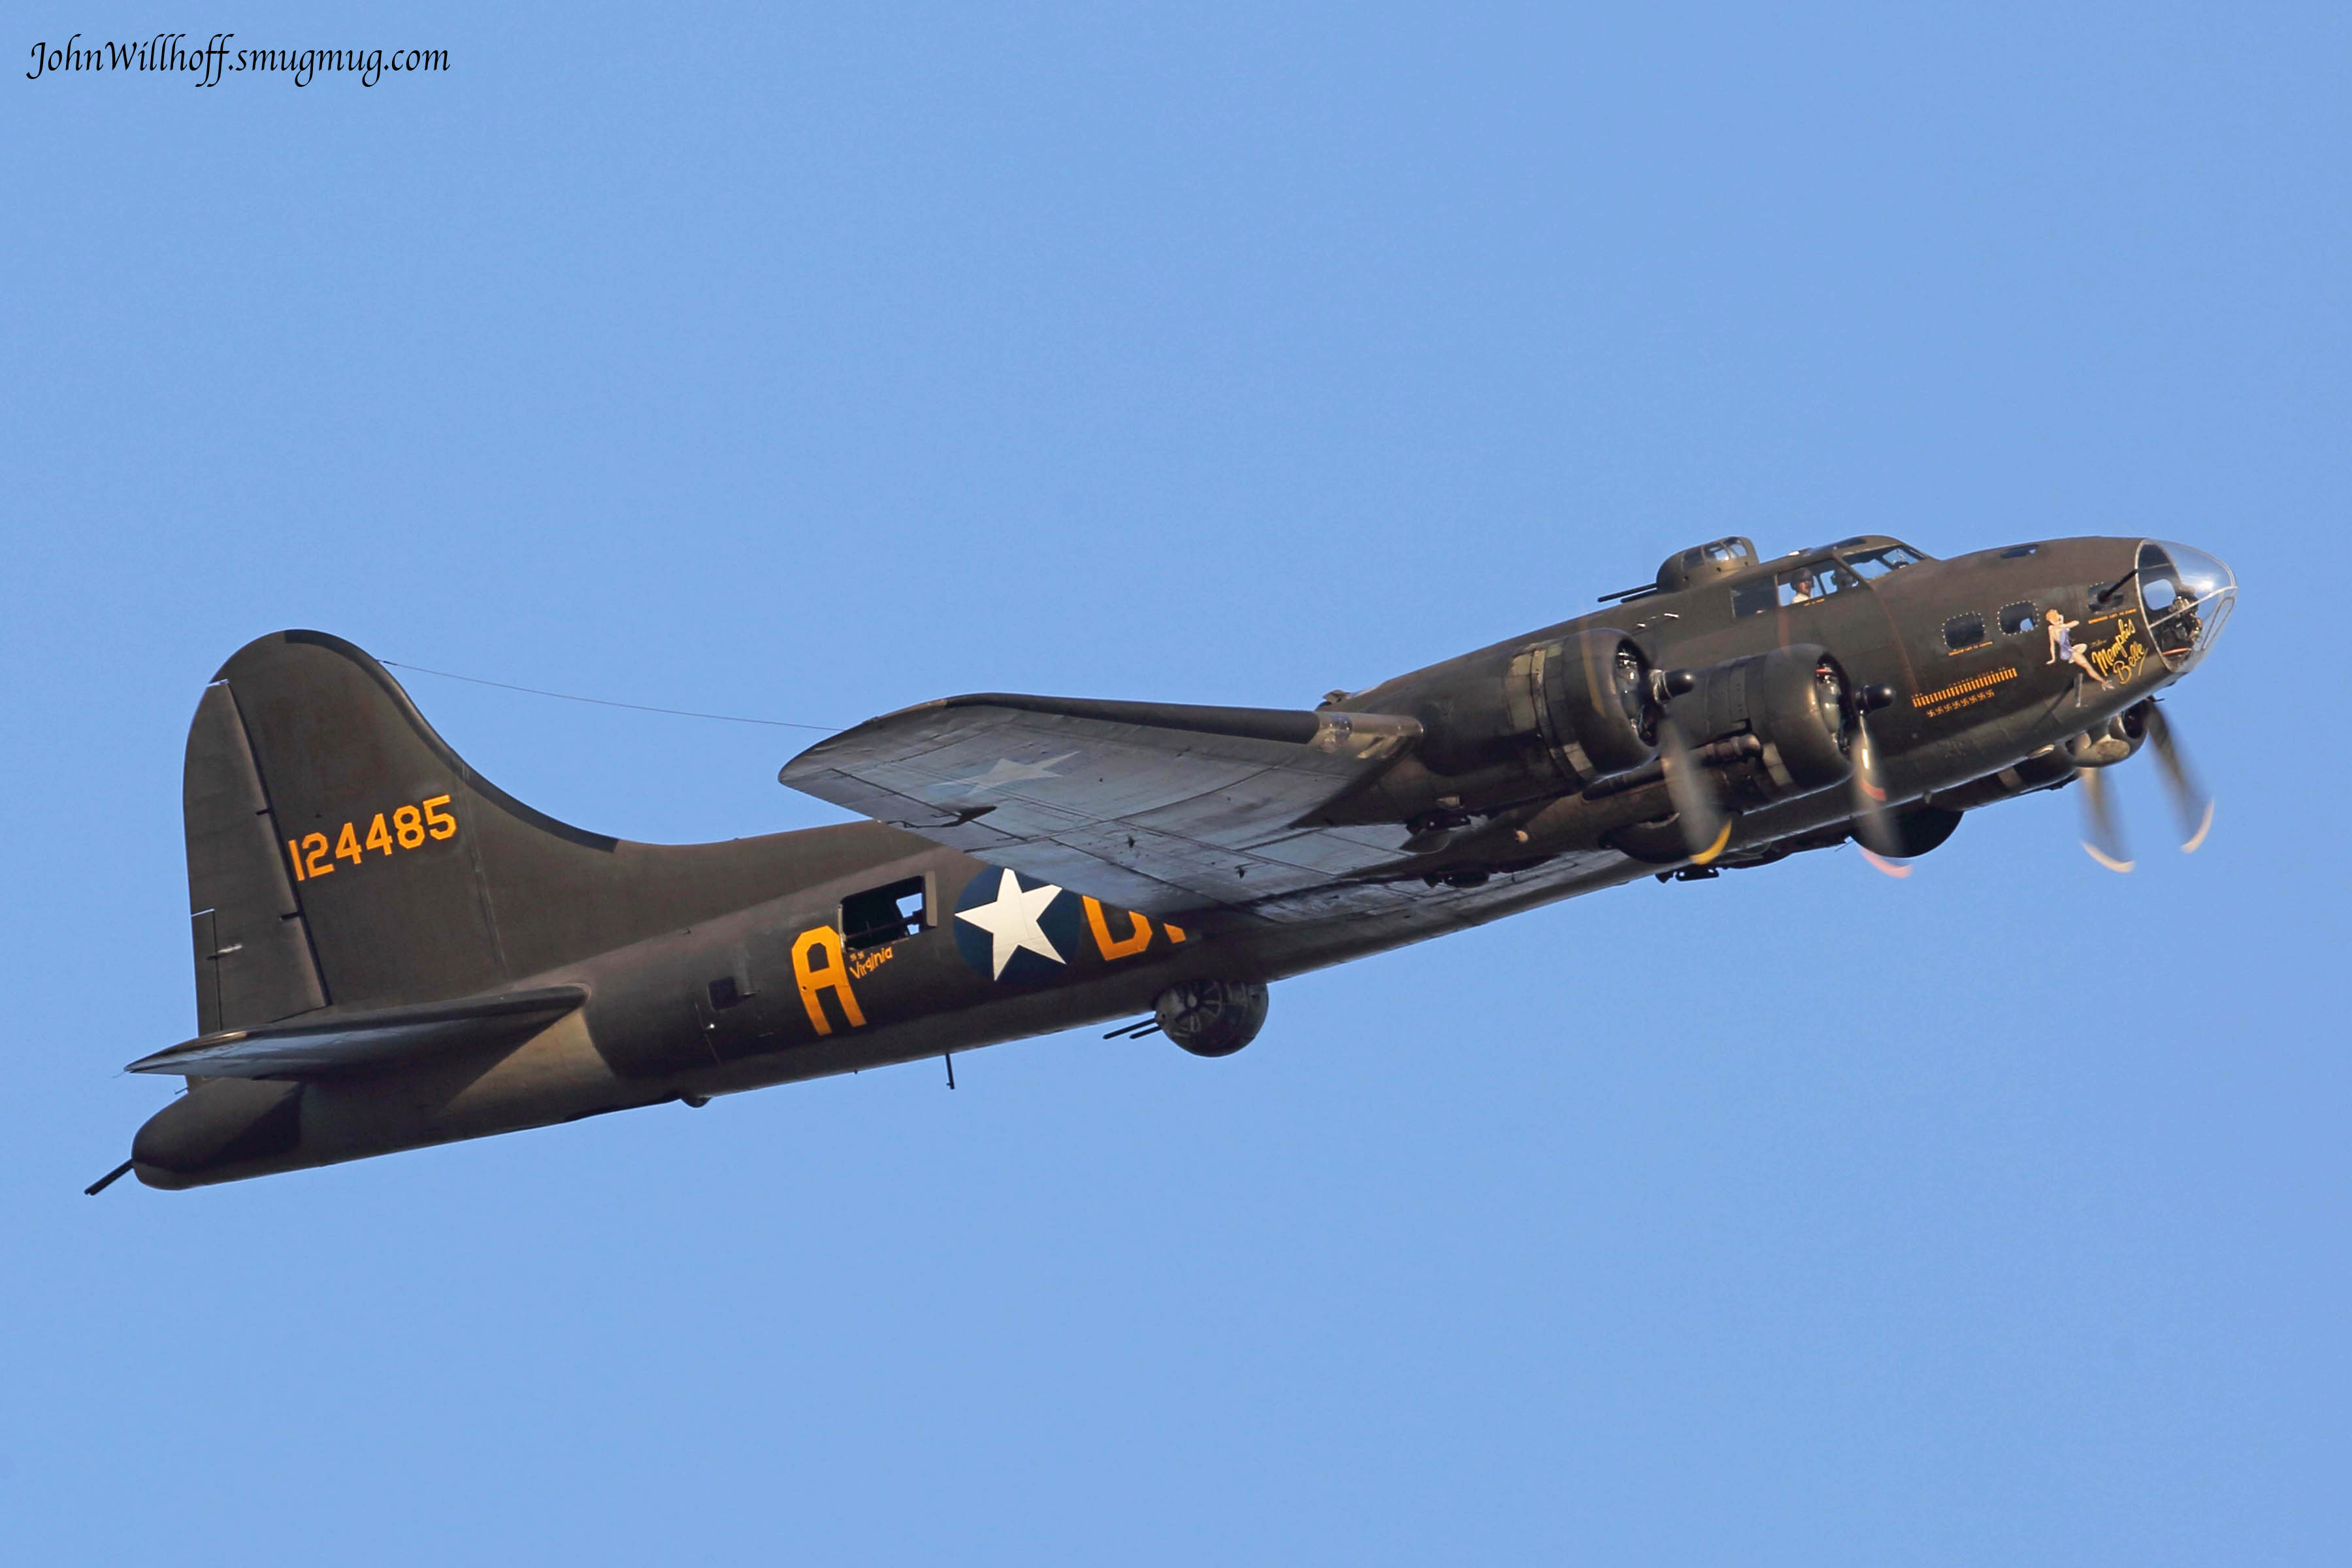 B-17F "Memphis Belle" taking of from KPDK in 2013. Photo by John Willhoff